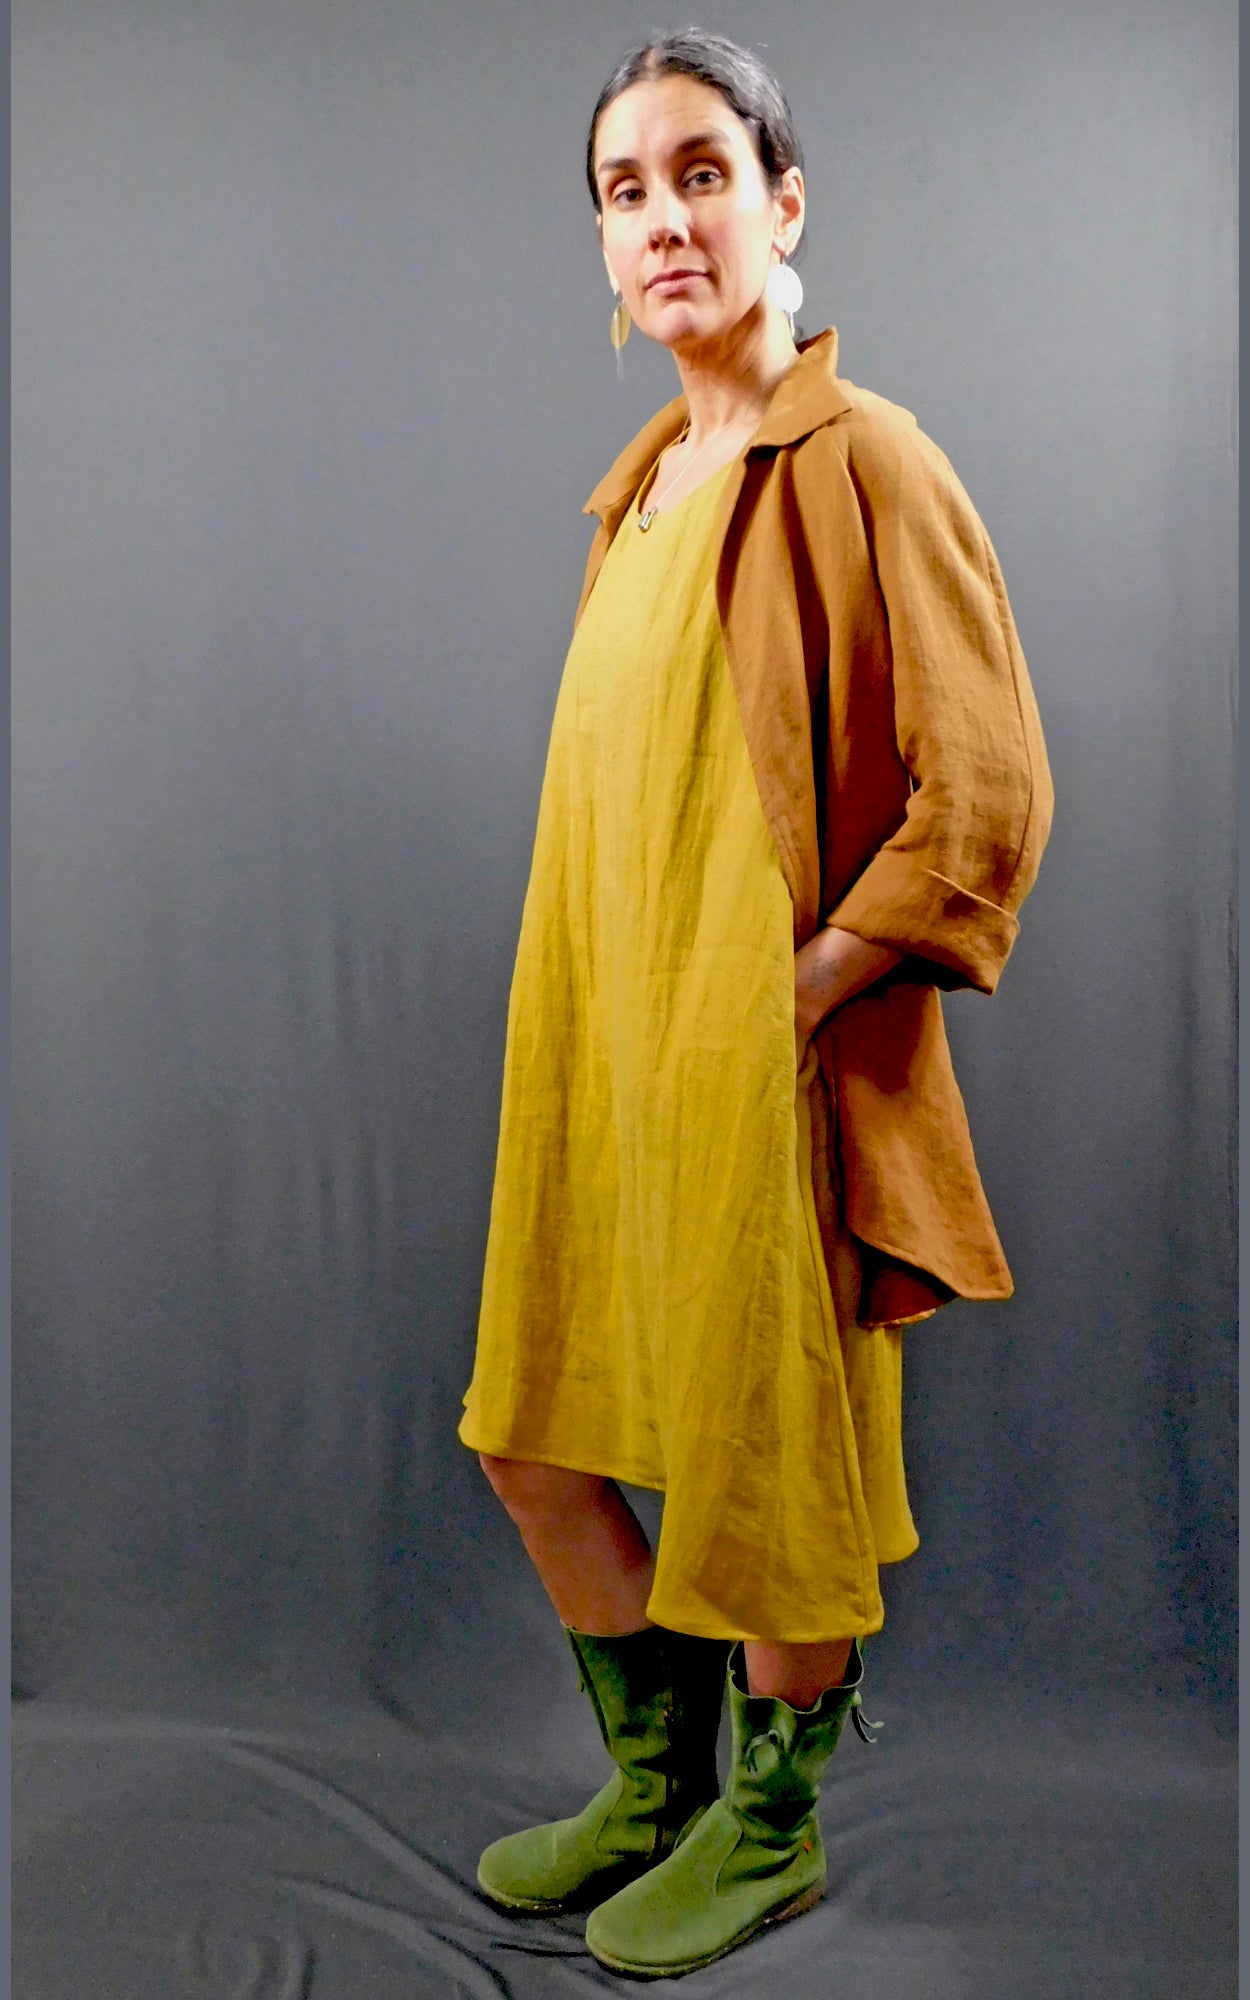 100% Linen Sleeveless Dress w pockets, colour Amber (Gold), worn under matching fabric 100% Linen Caramel Colour Raglan Sleeve Shirt Jacket